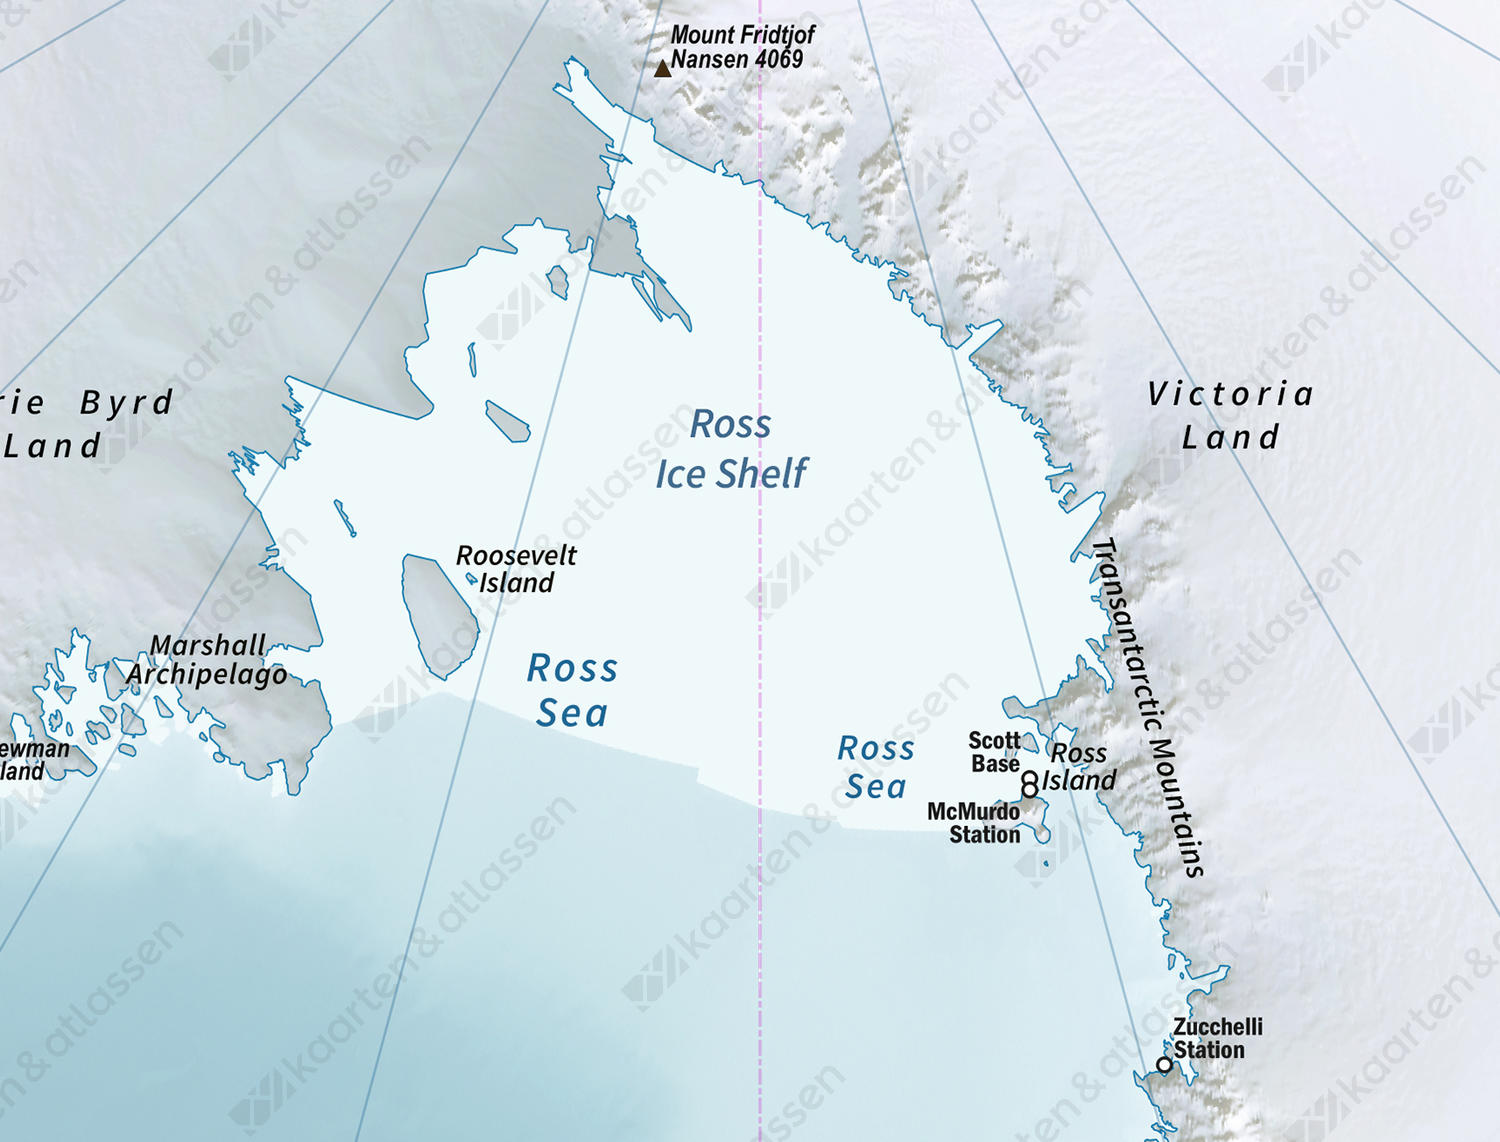 Antarctica / Zuidpool Natuurkundig